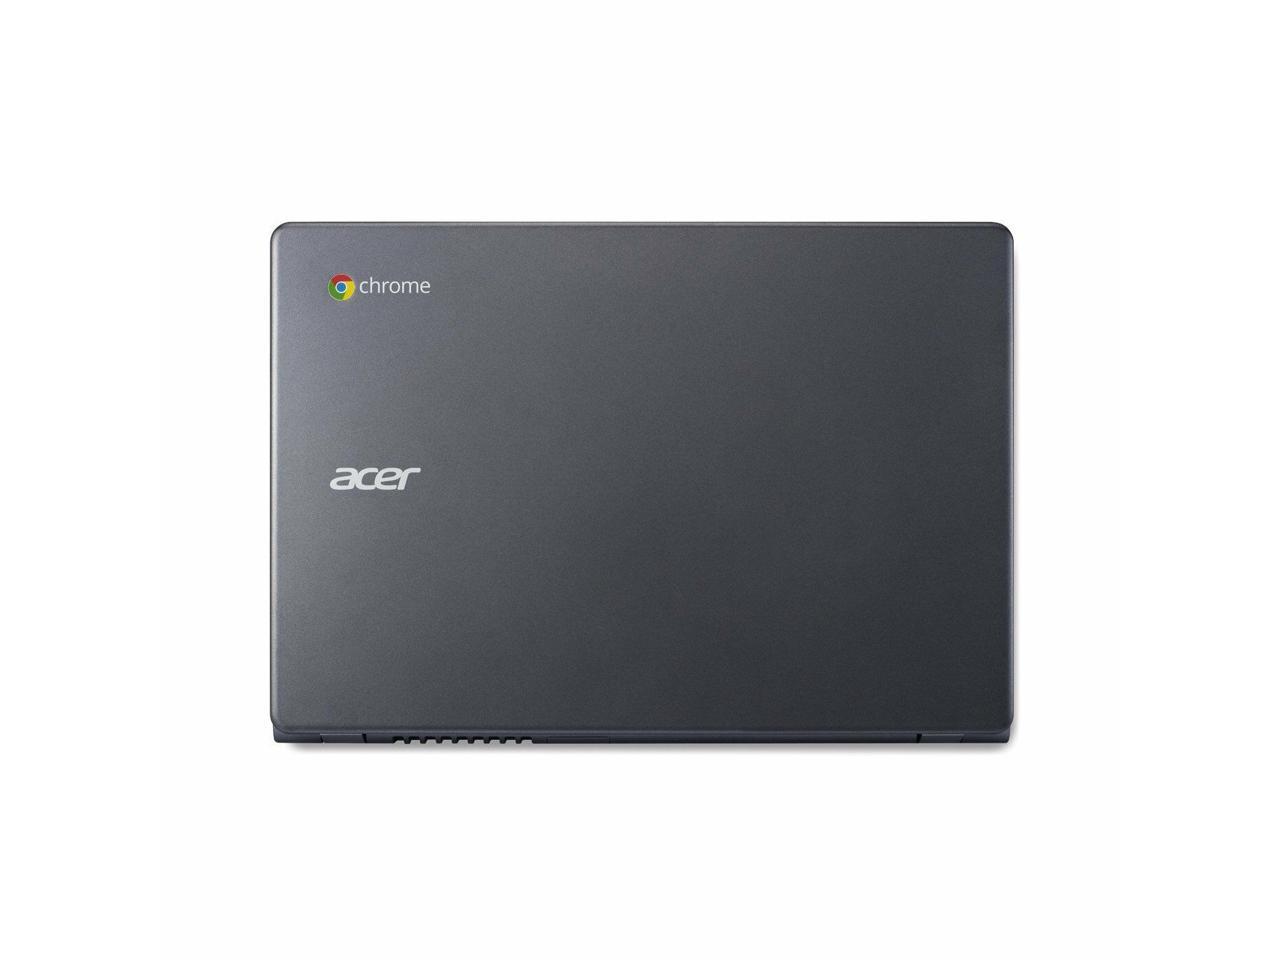 Acer C720P-2625 11.6" Chromebook Intel 2955U 1.40GHz Dual Core 4GB-DDR3 16GB-SSD